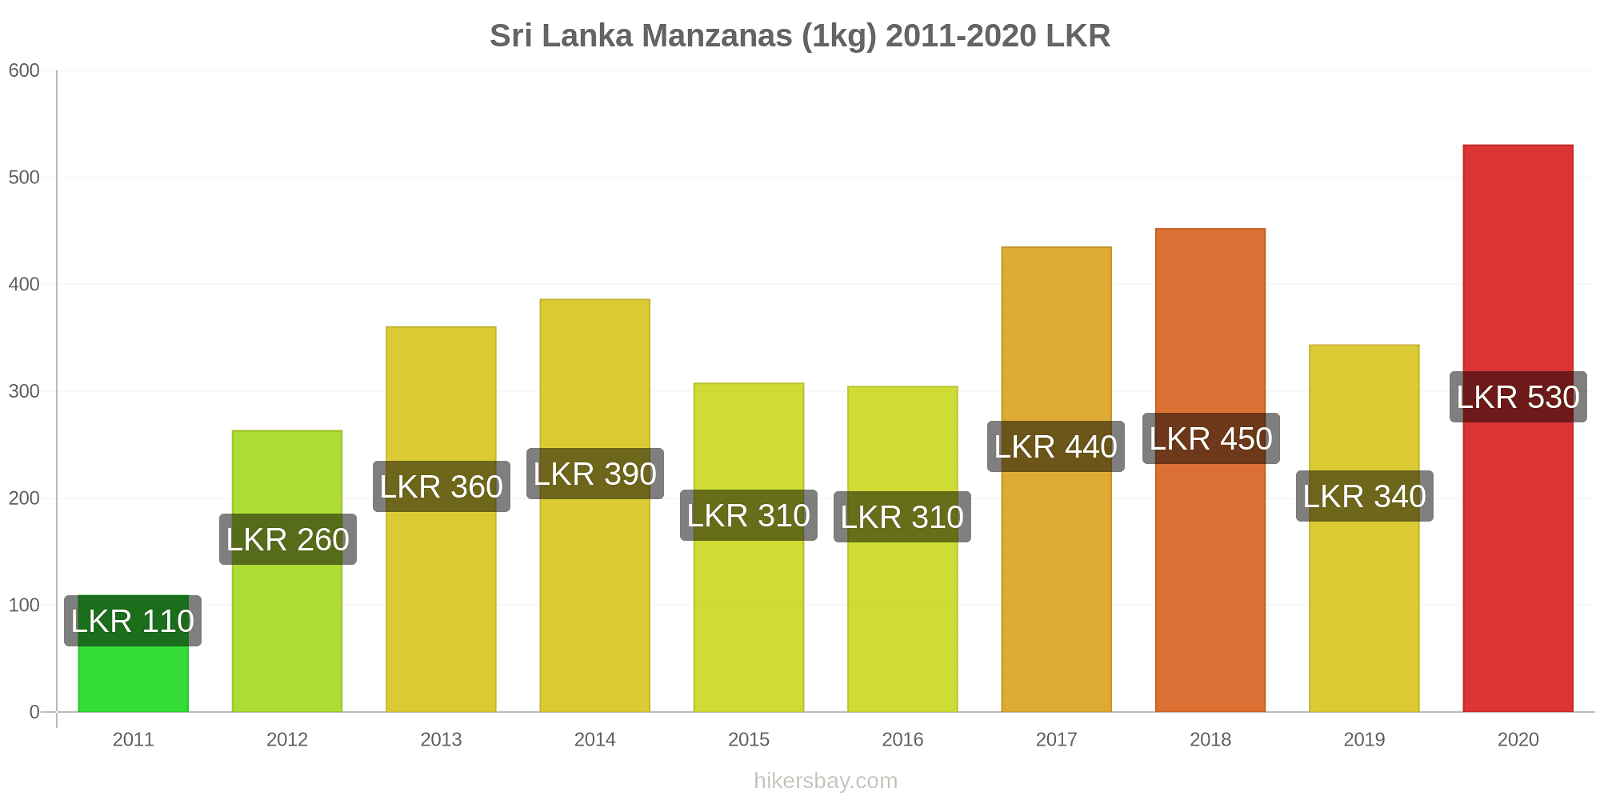 Sri Lanka cambios de precios Manzanas (1kg) hikersbay.com